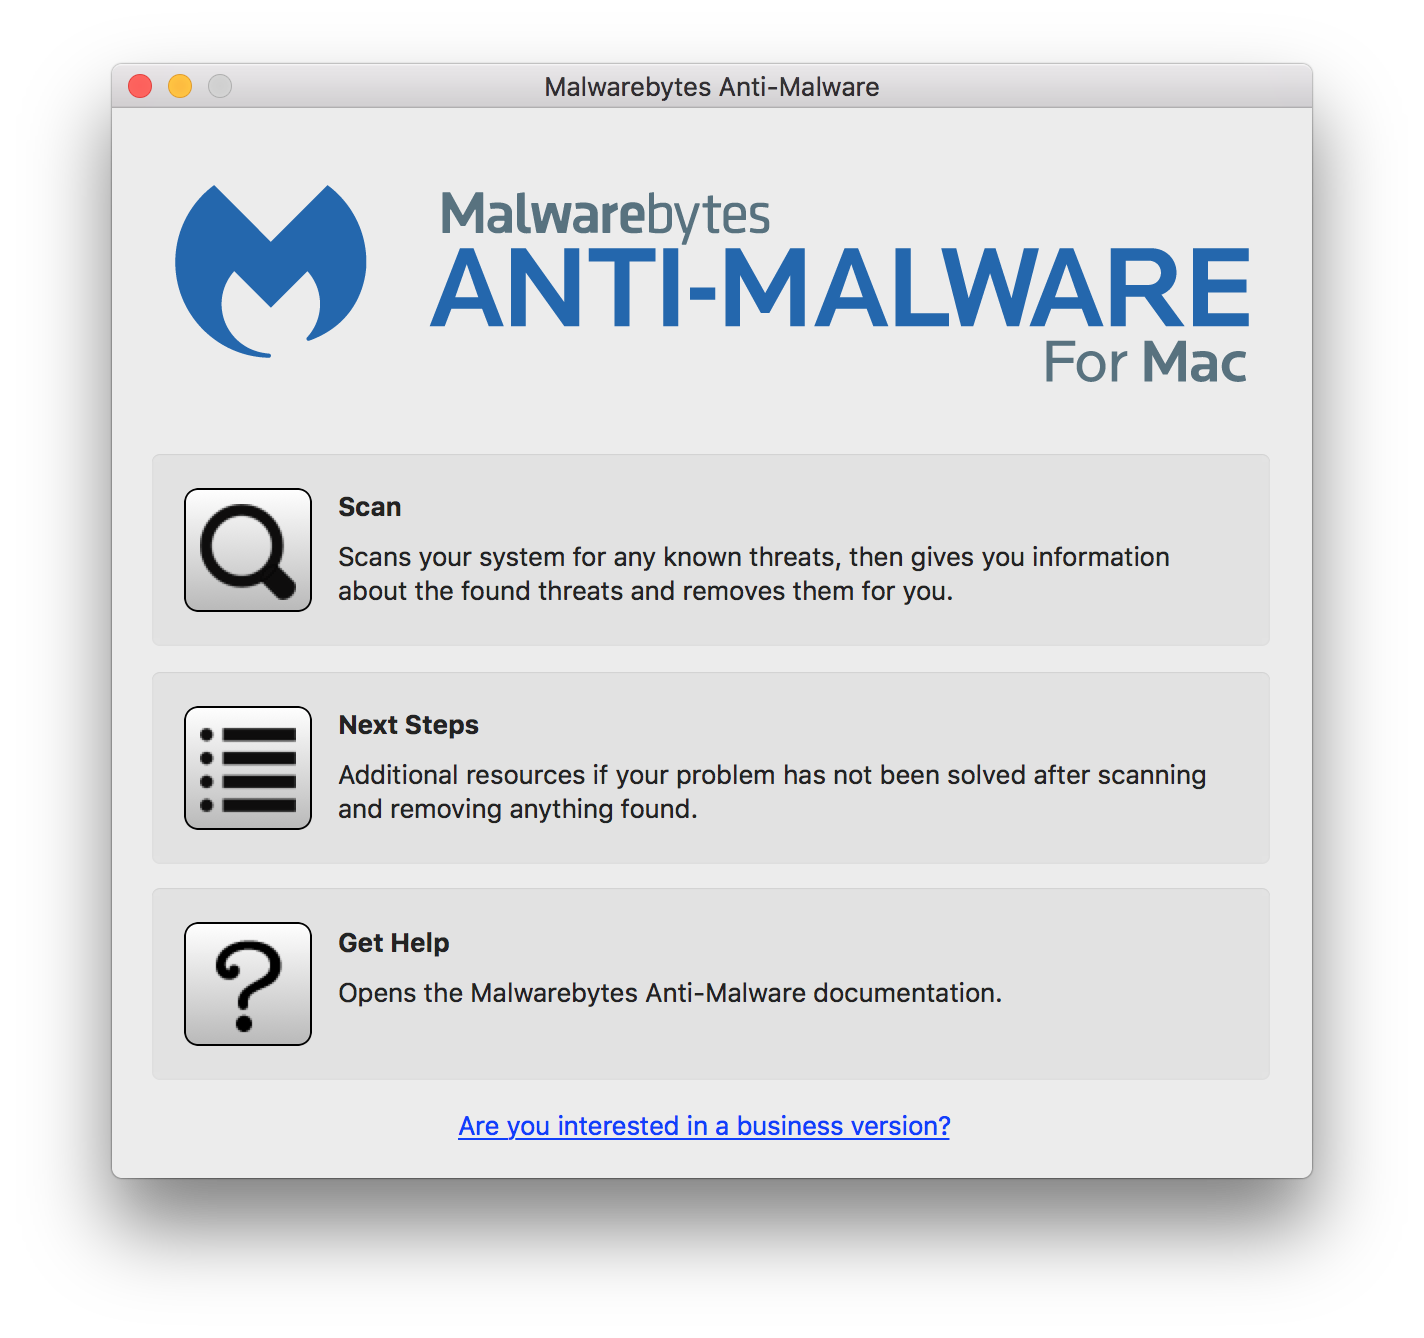 malwarebytes for mac 10.11.6